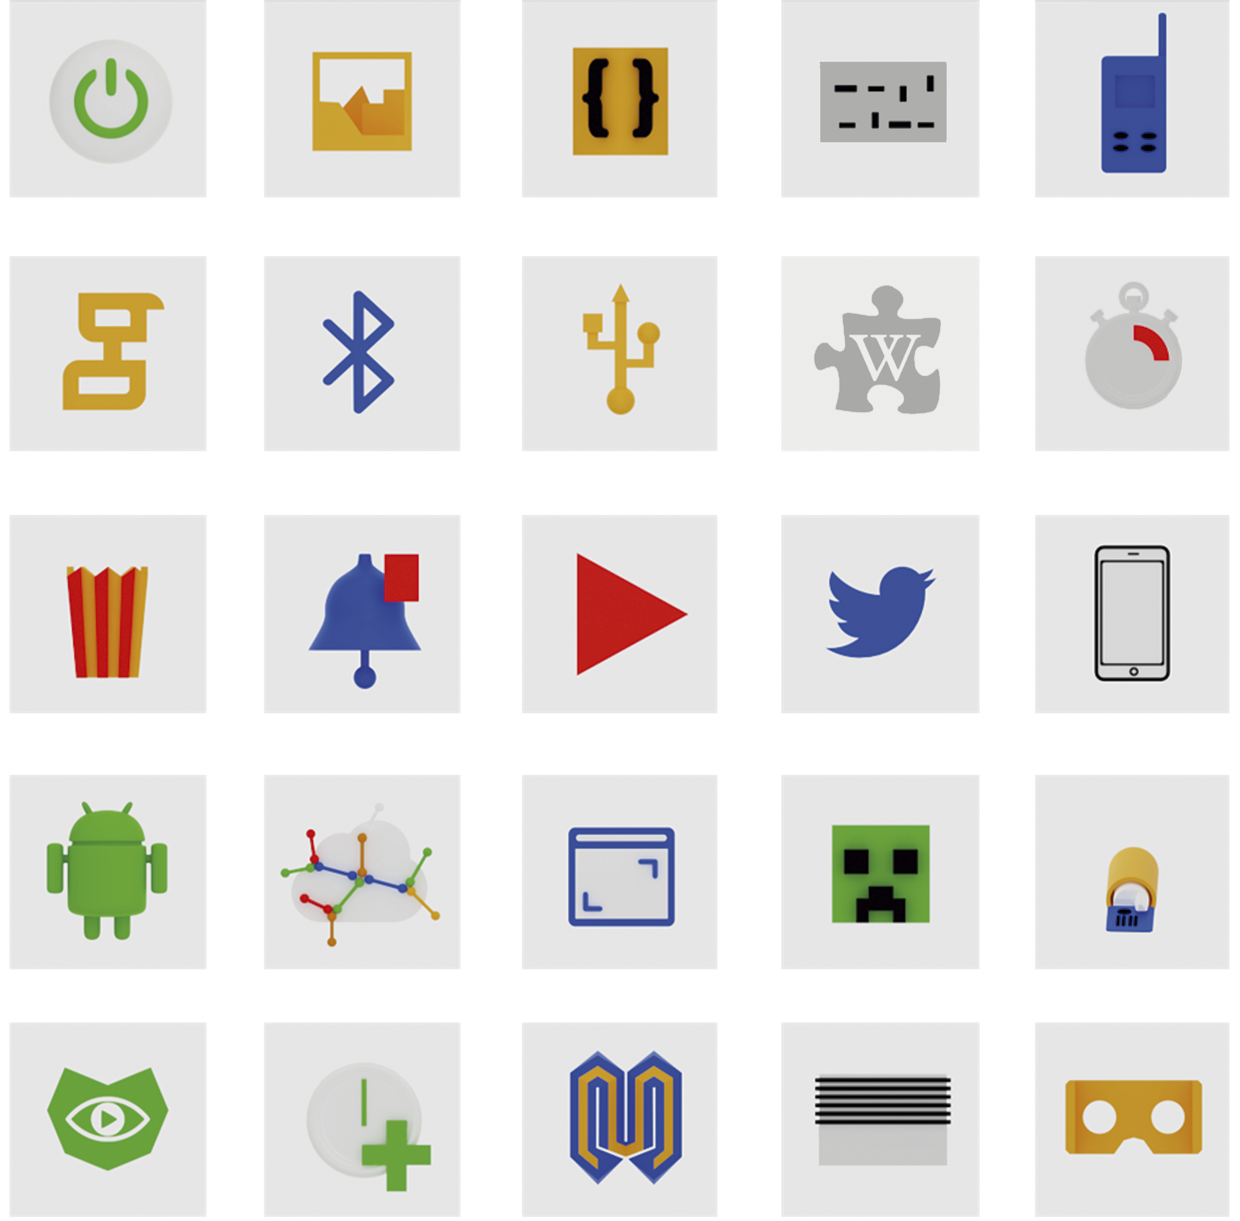 25 ícones dispostos numa grelha de 5x5